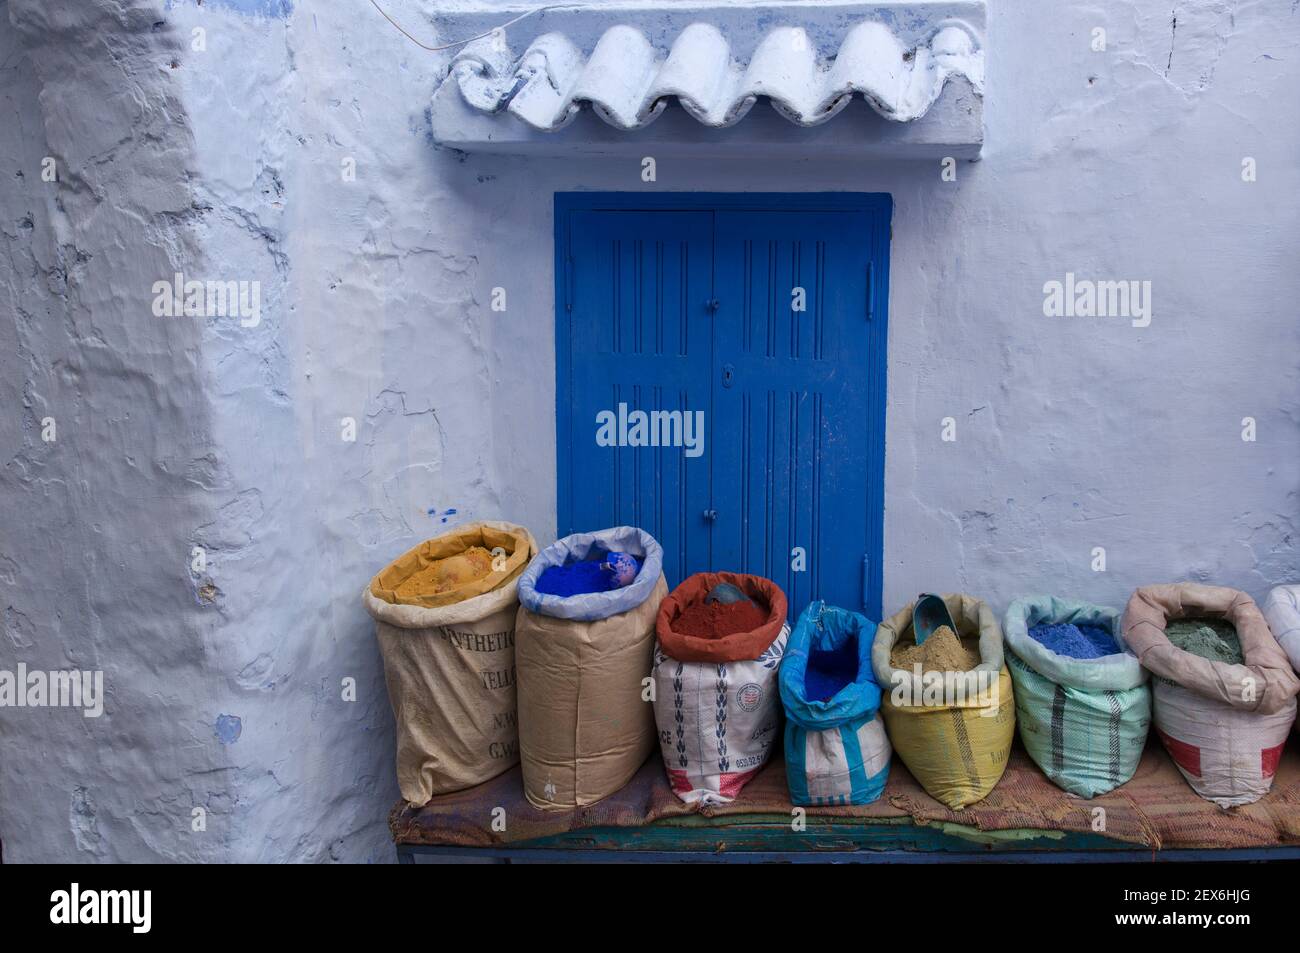 Maroc, Chefchaouen, architecture de la ville bleue des bâtiments blanchis à la chaux blanc et indigo, avec sacs de pigments de peinture colorés en vente Banque D'Images